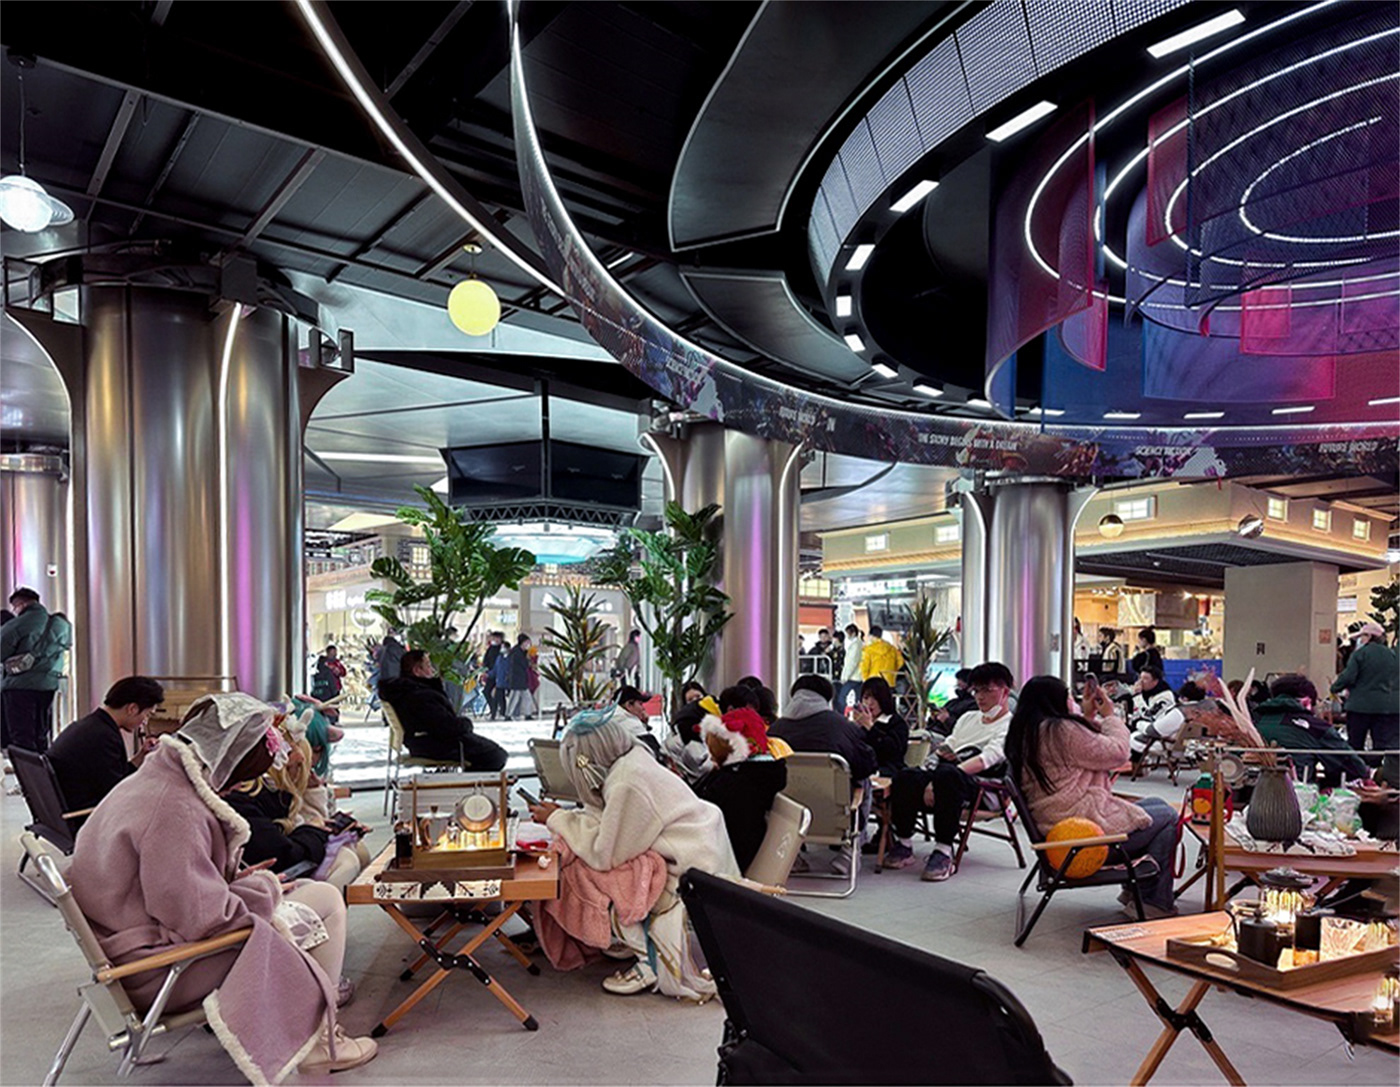 主题街区 商业空间设计 夏谷暑雨 室內設計 室内设计 空間攝影 空間設計 空间设计 餐饮空间设计